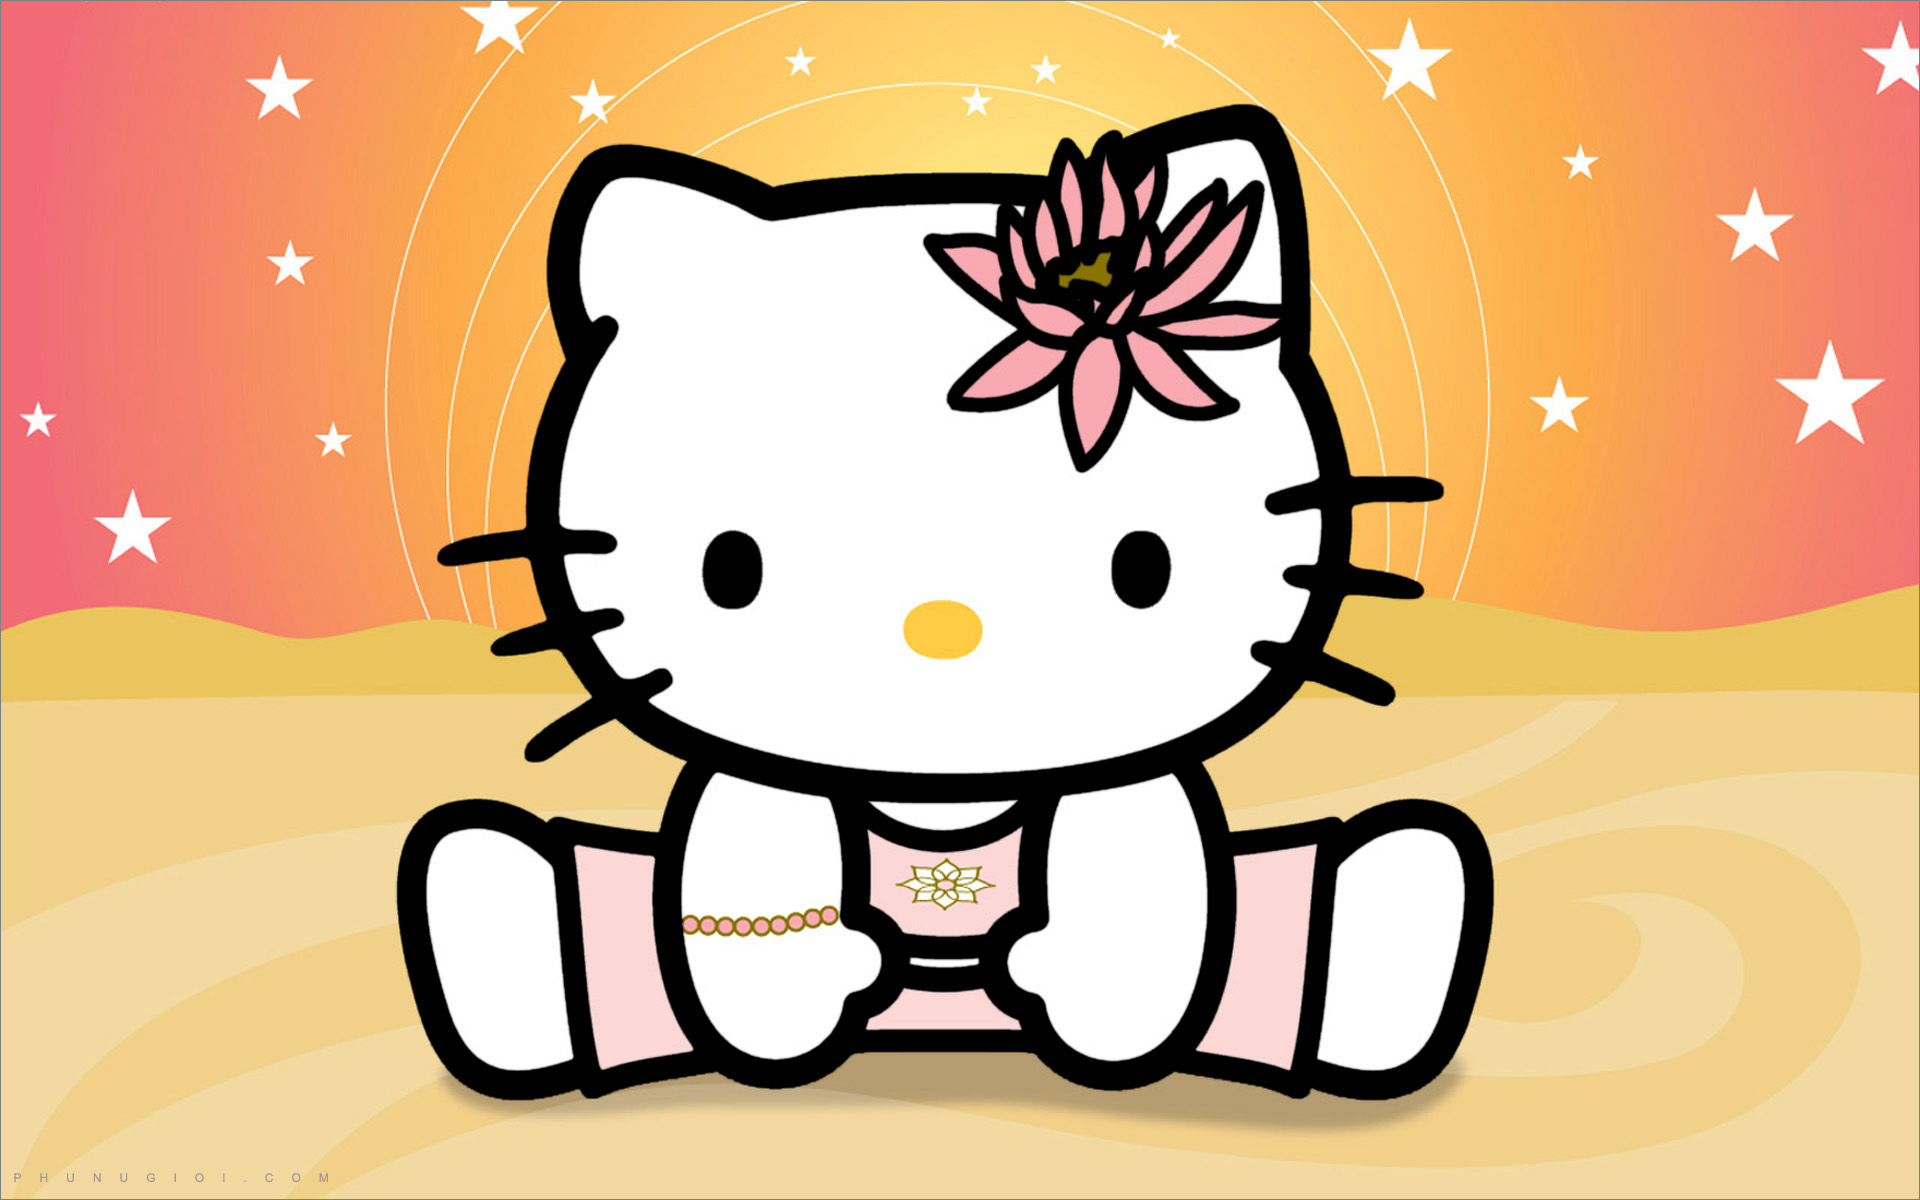 Ảnh Hello Kitty là một trong những chủ đề được yêu thích nhất trong cộng đồng Hello Kitty. Cùng nhau khám phá và tìm hiểu về nhân vật đáng yêu này qua những tấm hình ảnh độc đáo và sáng tạo.